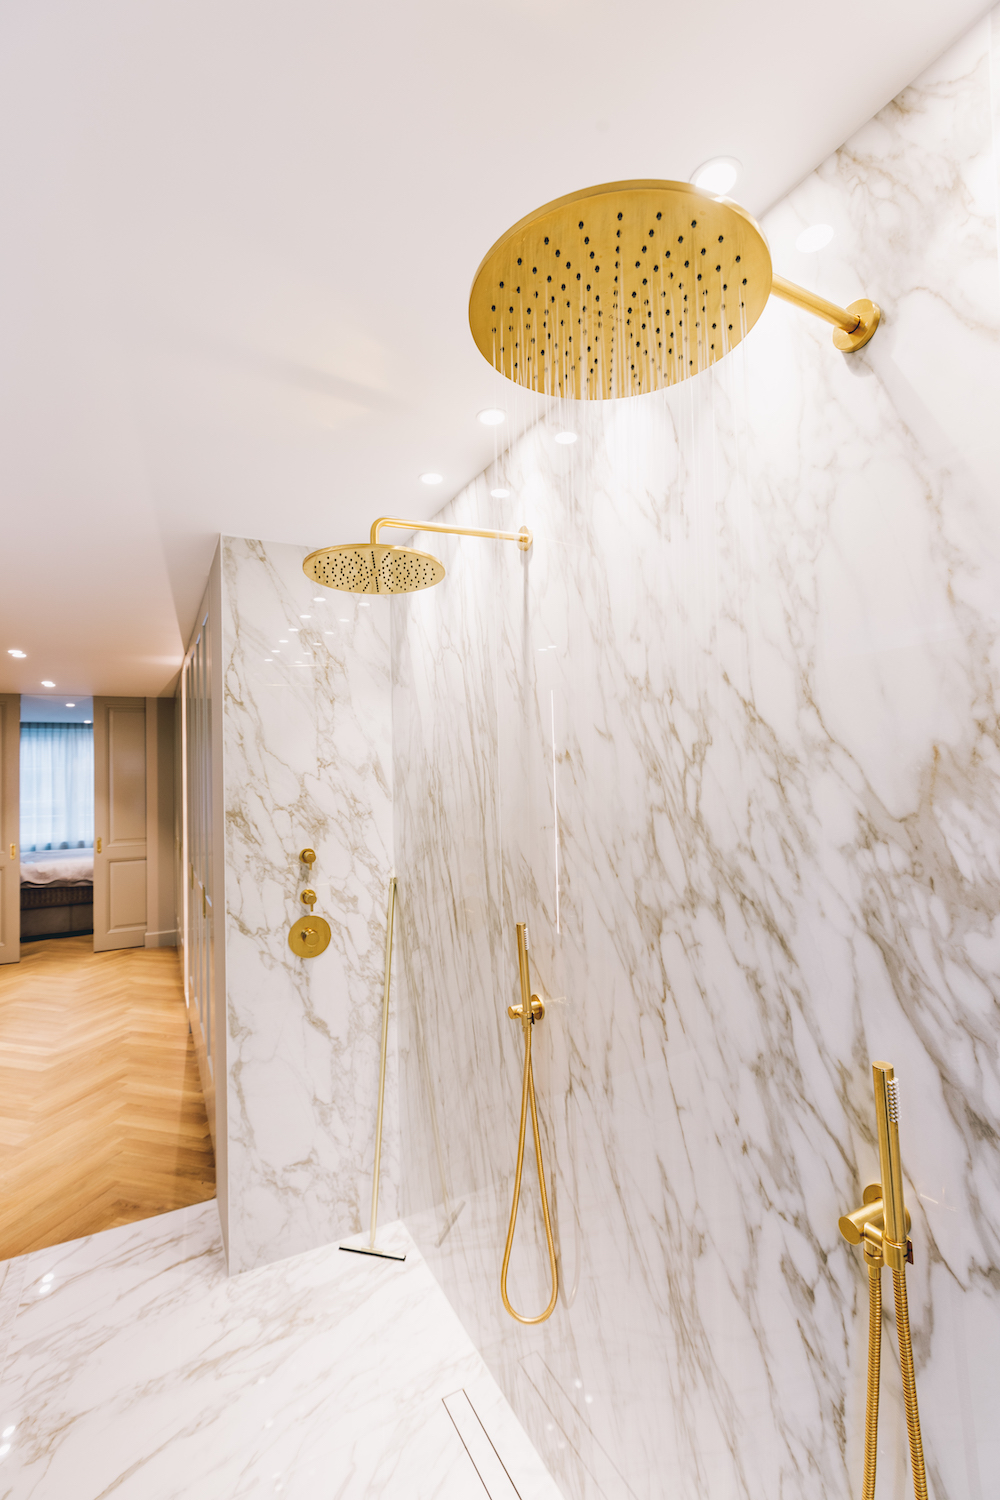 Fobie Slang eeuwig Binnenkijken: luxe badkamer met goud en marmer - UW-badkamer.nl